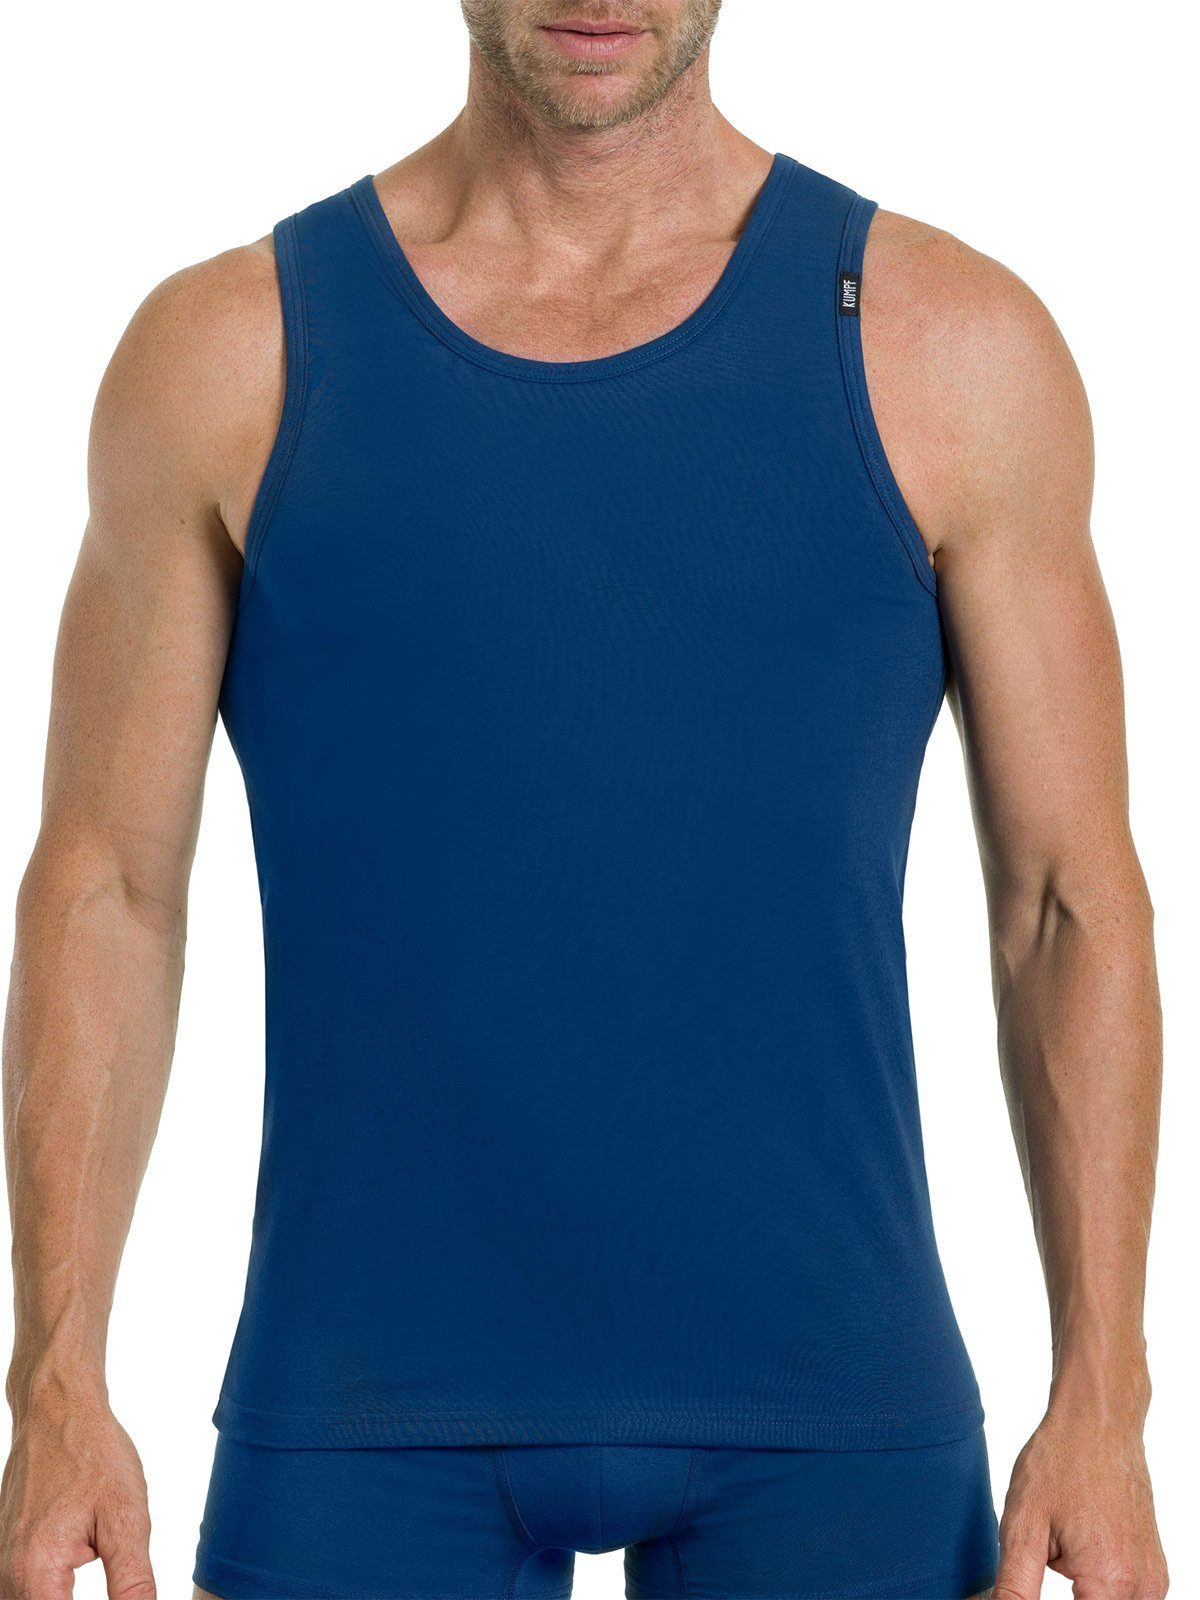 Achselhemd hohe 2er Sparpack Markenqualität KUMPF Bio 2-St) darkblue Unterhemd Cotton weiss Herren (Spar-Set,